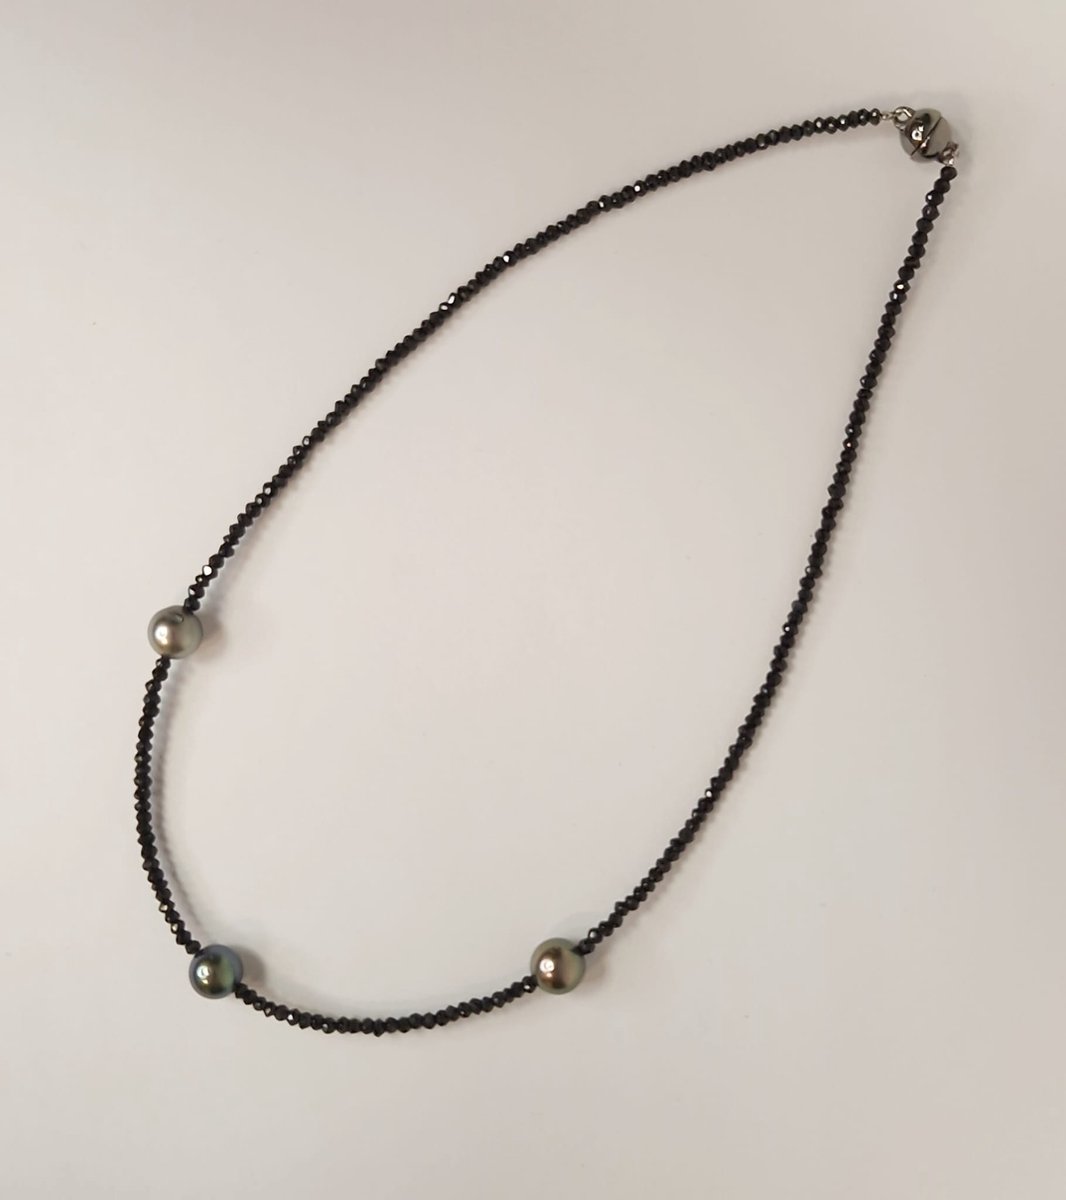 Parels – spinel - collier – zilver – magneetslot - ketting – uitverkoop Juwelier Verlinden St. Hubert – van €429,= voor €349,=